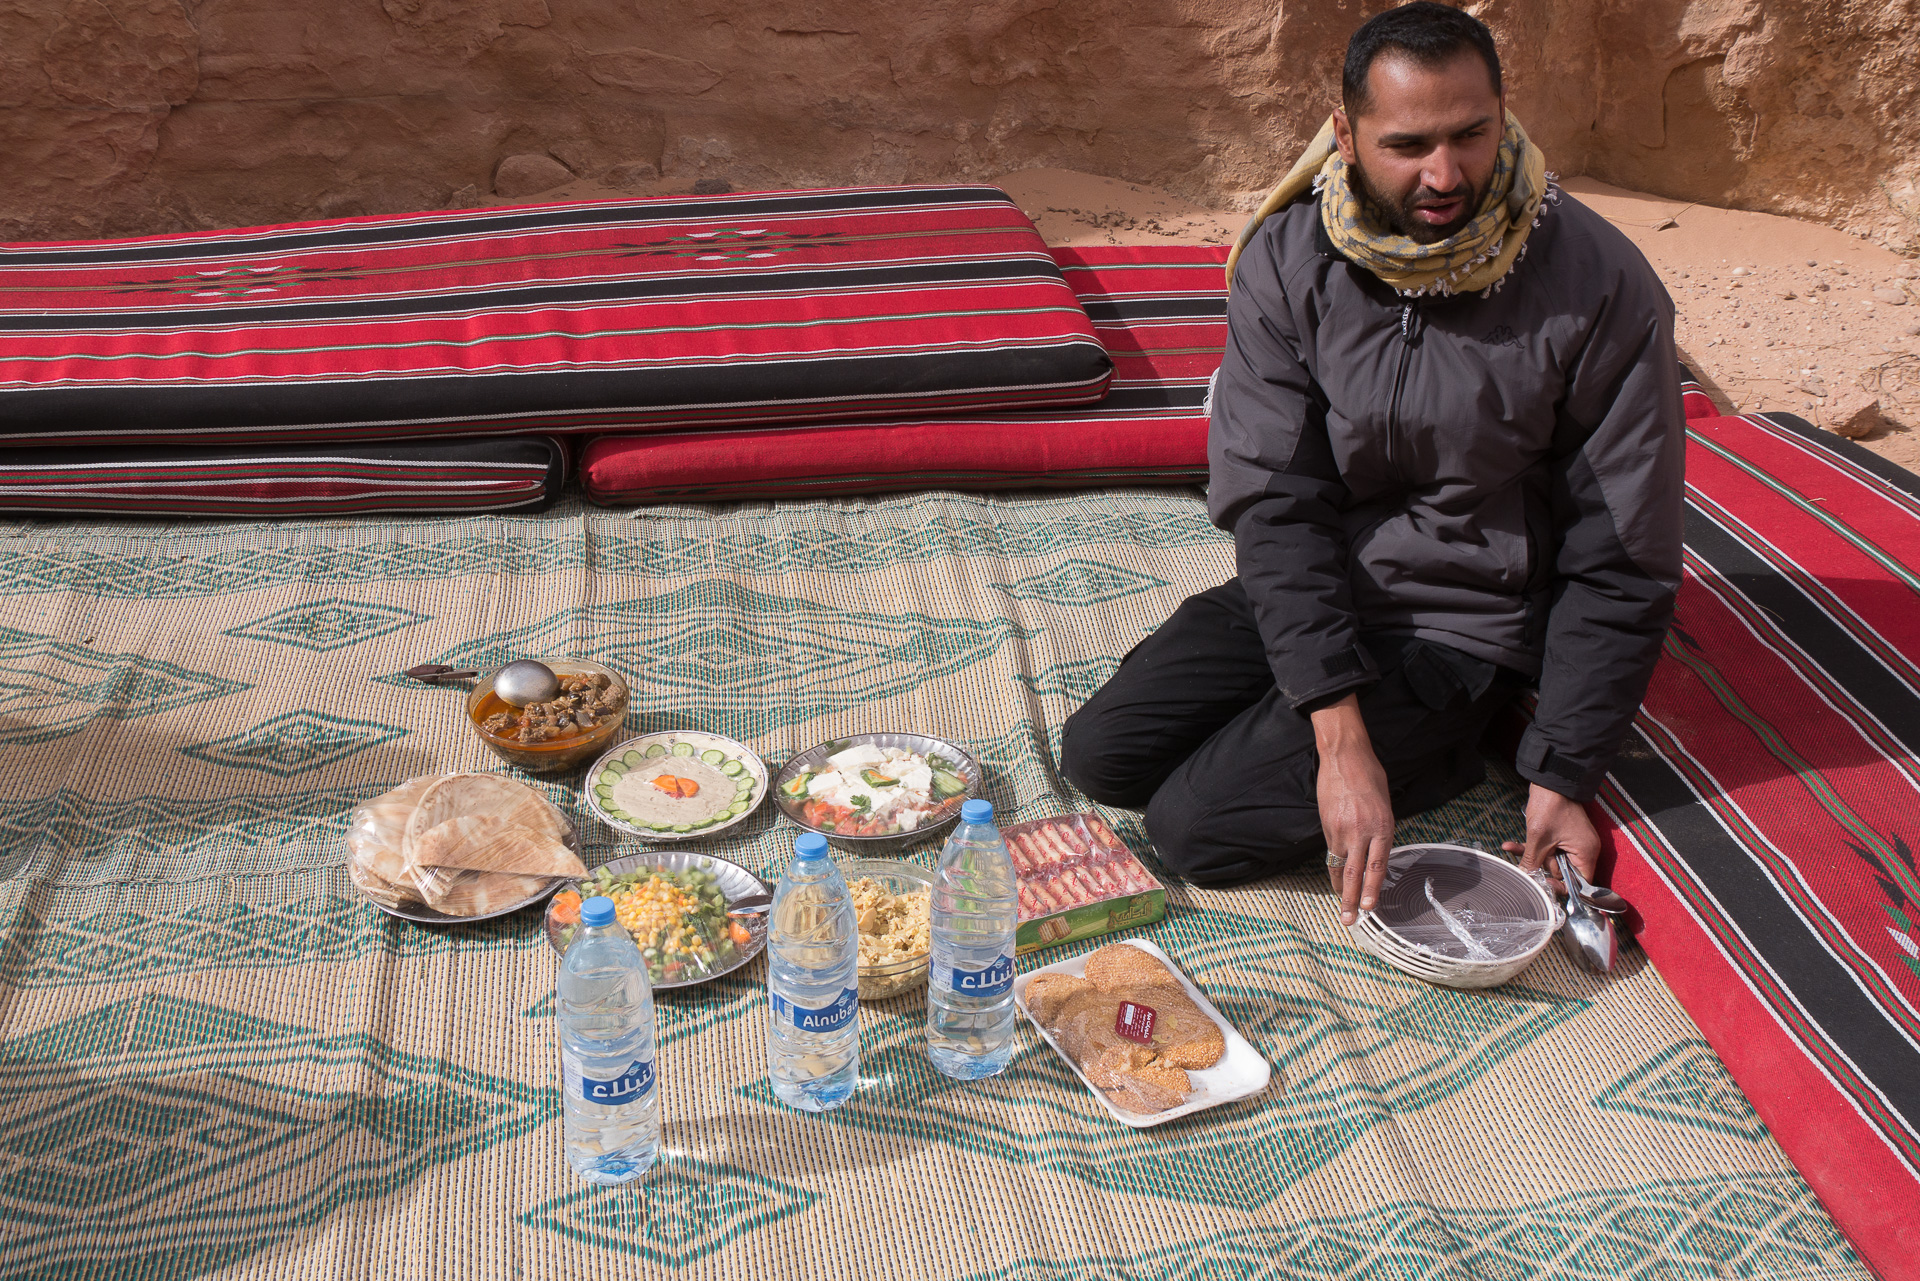 Notre guide Ahmad installe de lunch - Une semaine en Jordanie